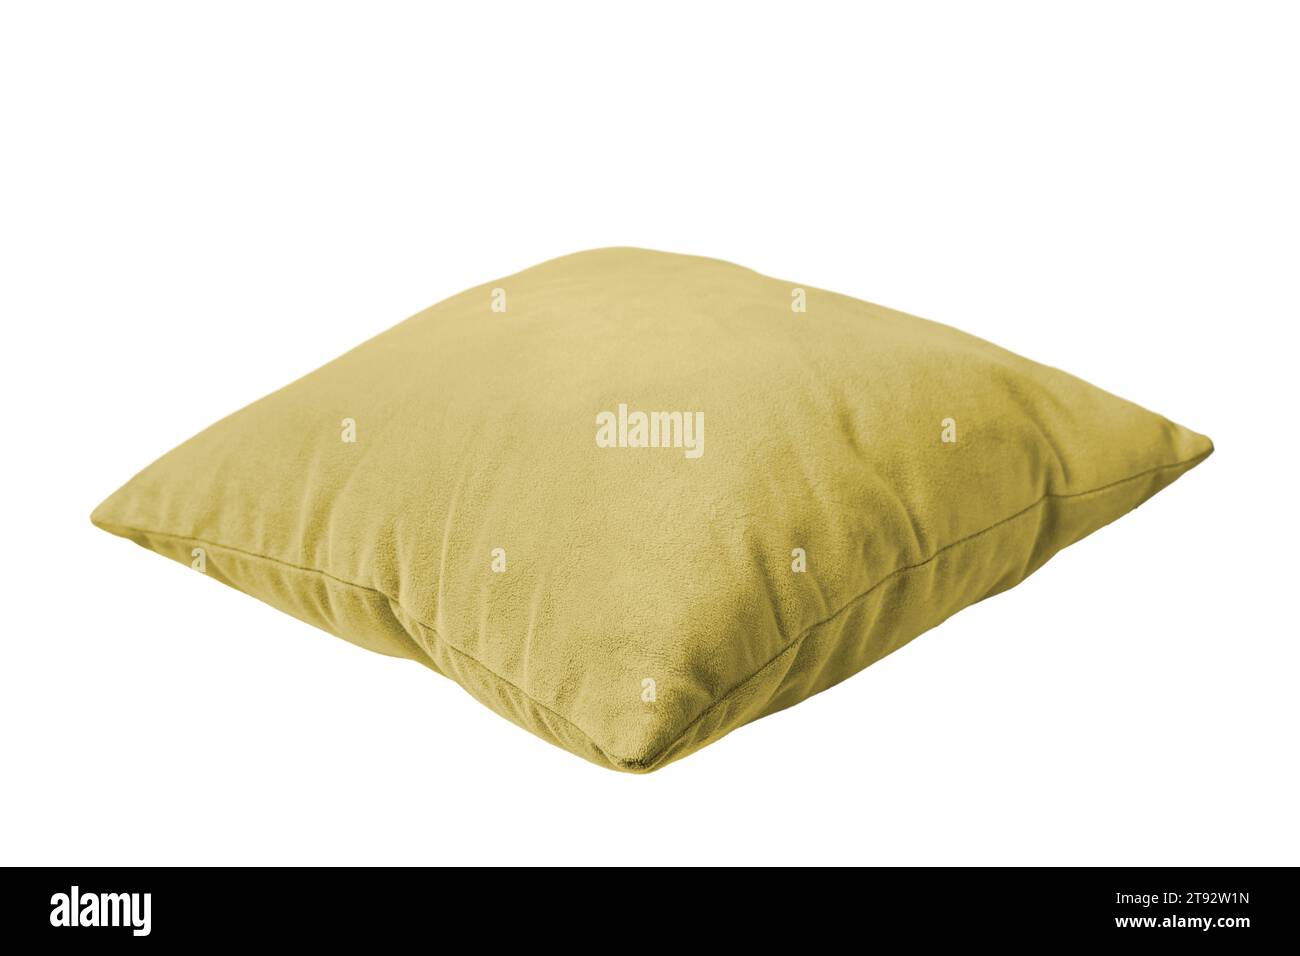 Coussin rectangulaire jaune décoratif pour dormir et se reposer isolé sur fond blanc. Coussin pour la décoration intérieure de la maison, maquette de taie d'oreiller, templa Banque D'Images